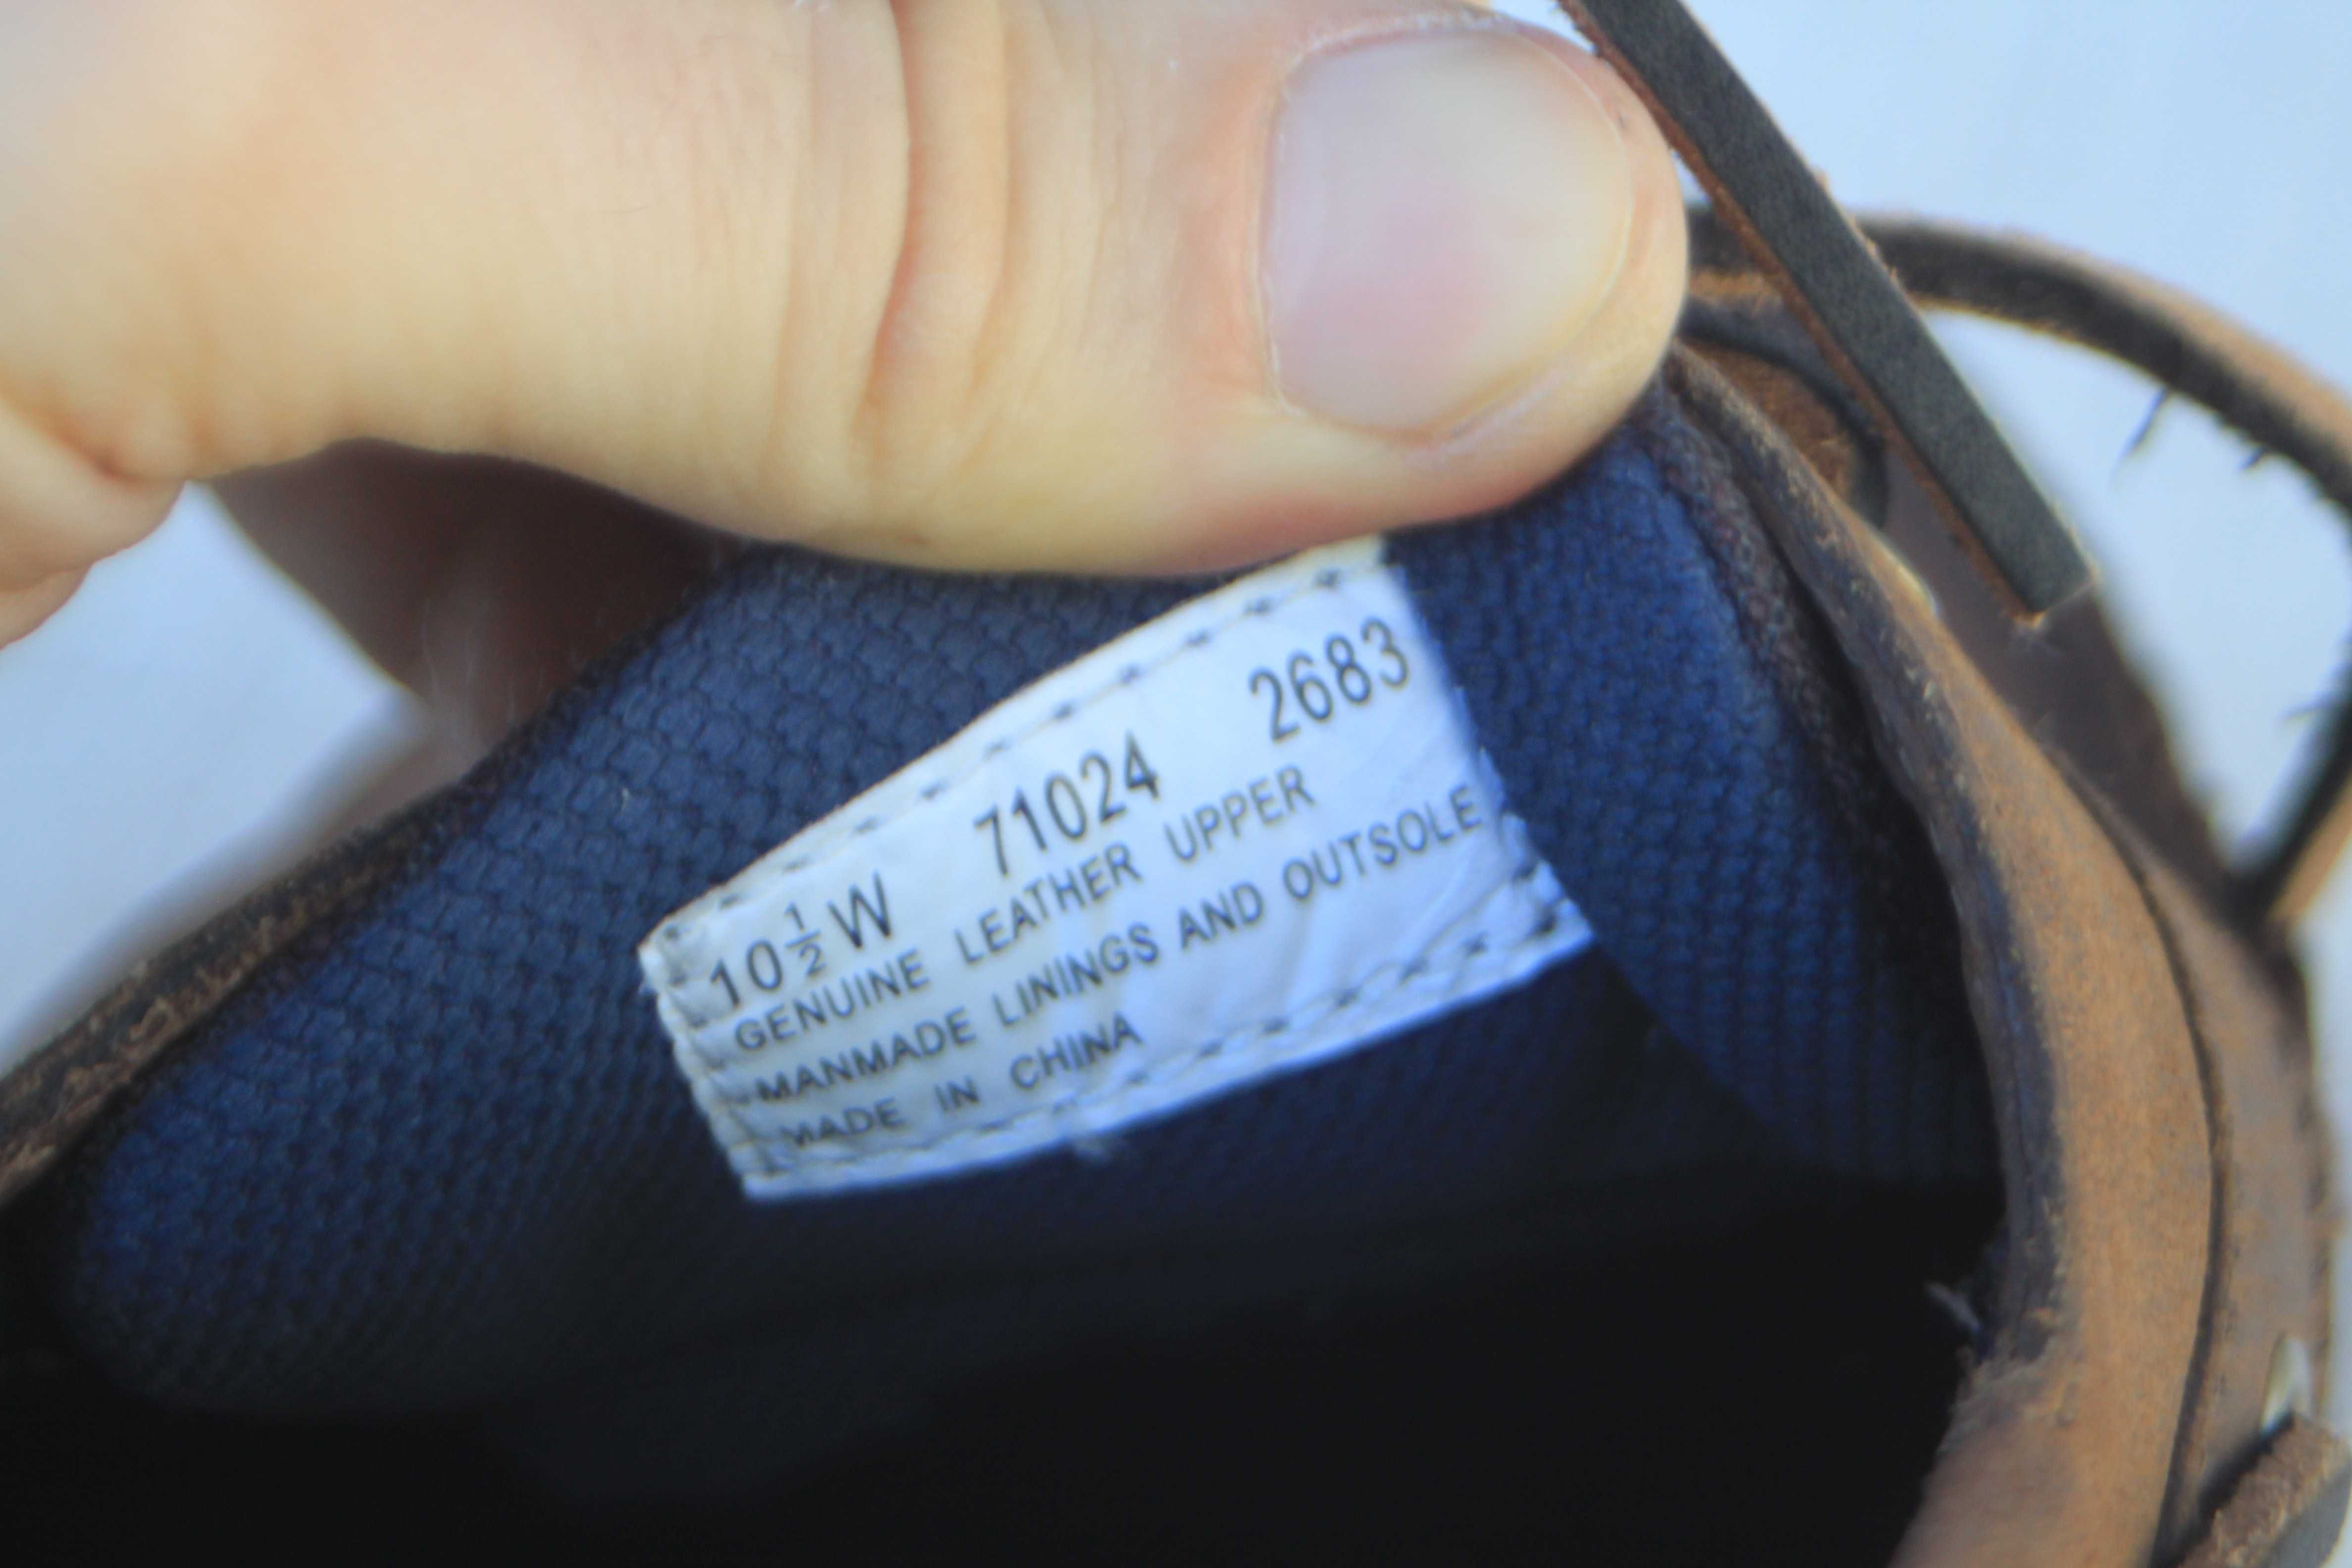 Топсайдеры Timberland кожа США оригинал 44,5р туфли мокасины